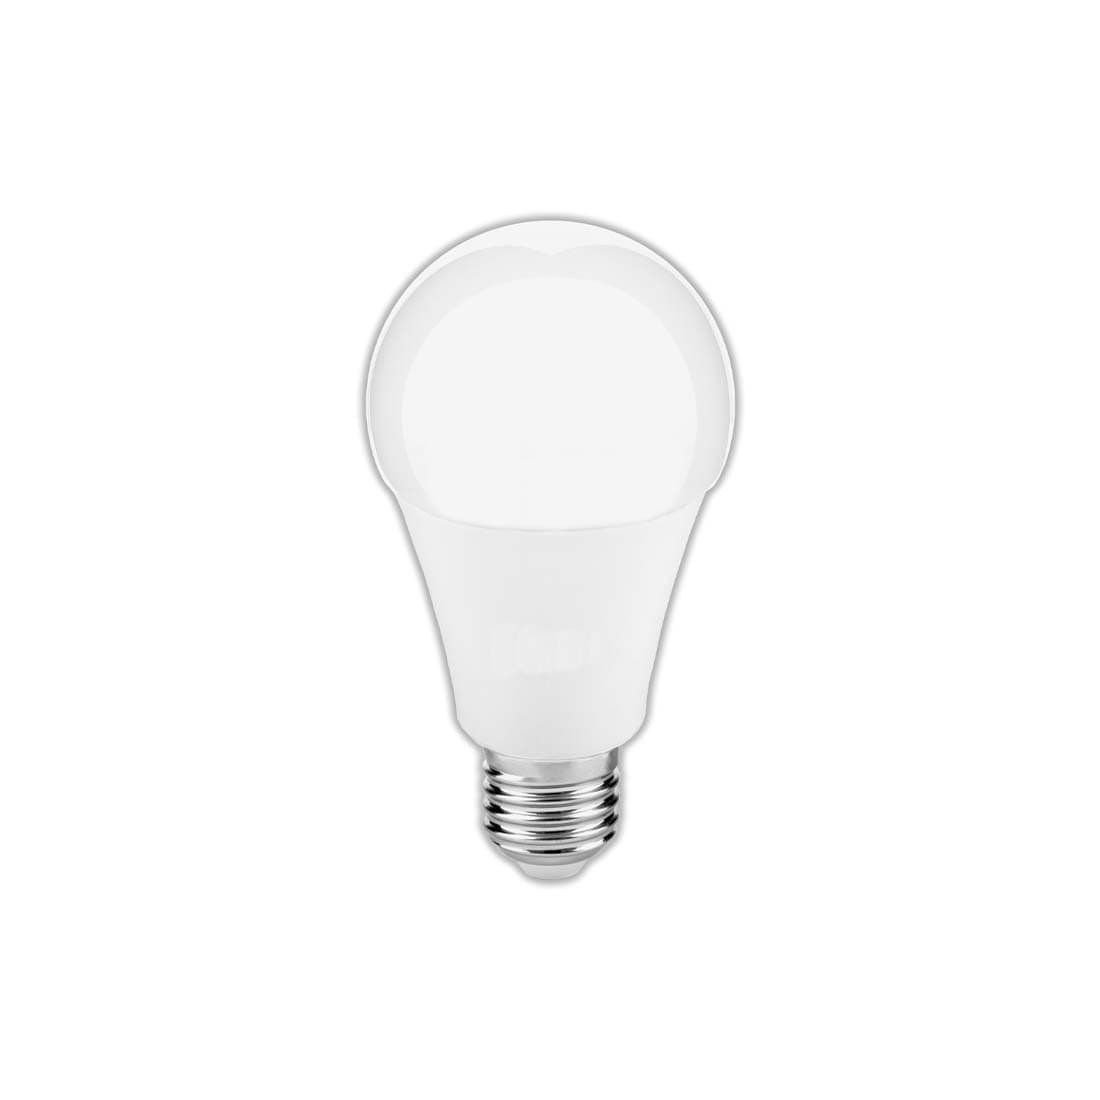 LED E27 vanlig sockel – den mest använda sockelstorleken i lampor 